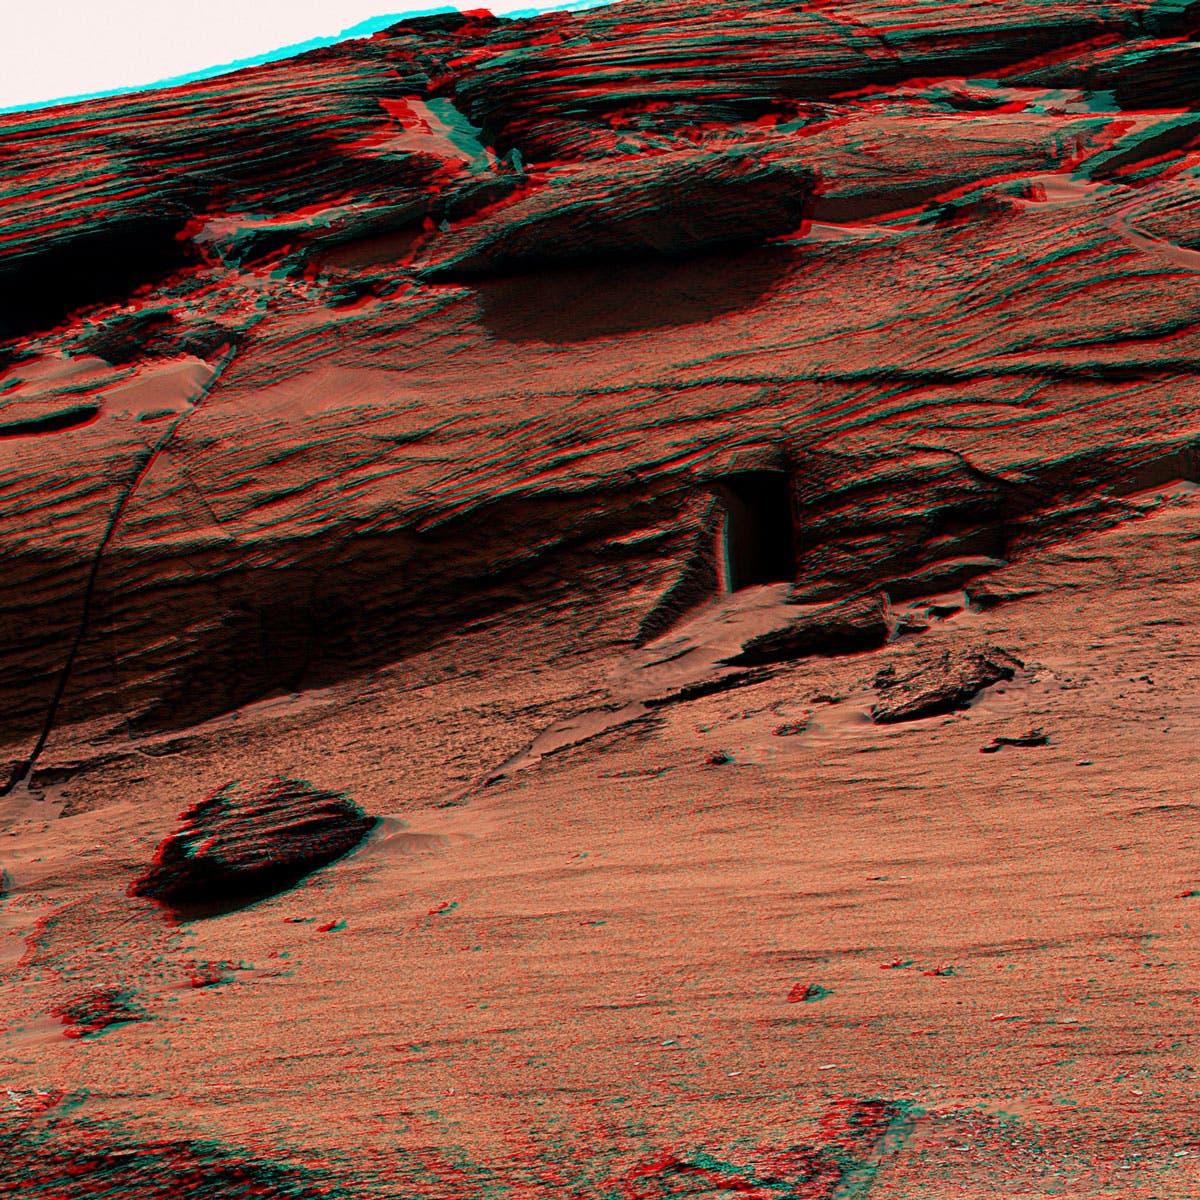 Das schwarze Rechteck sieht aus wie ein Eingang im Fels des Mars, ist aber nur eine natürliche Öffnung. Der Rover Curiosity hat sie fotografiert. 